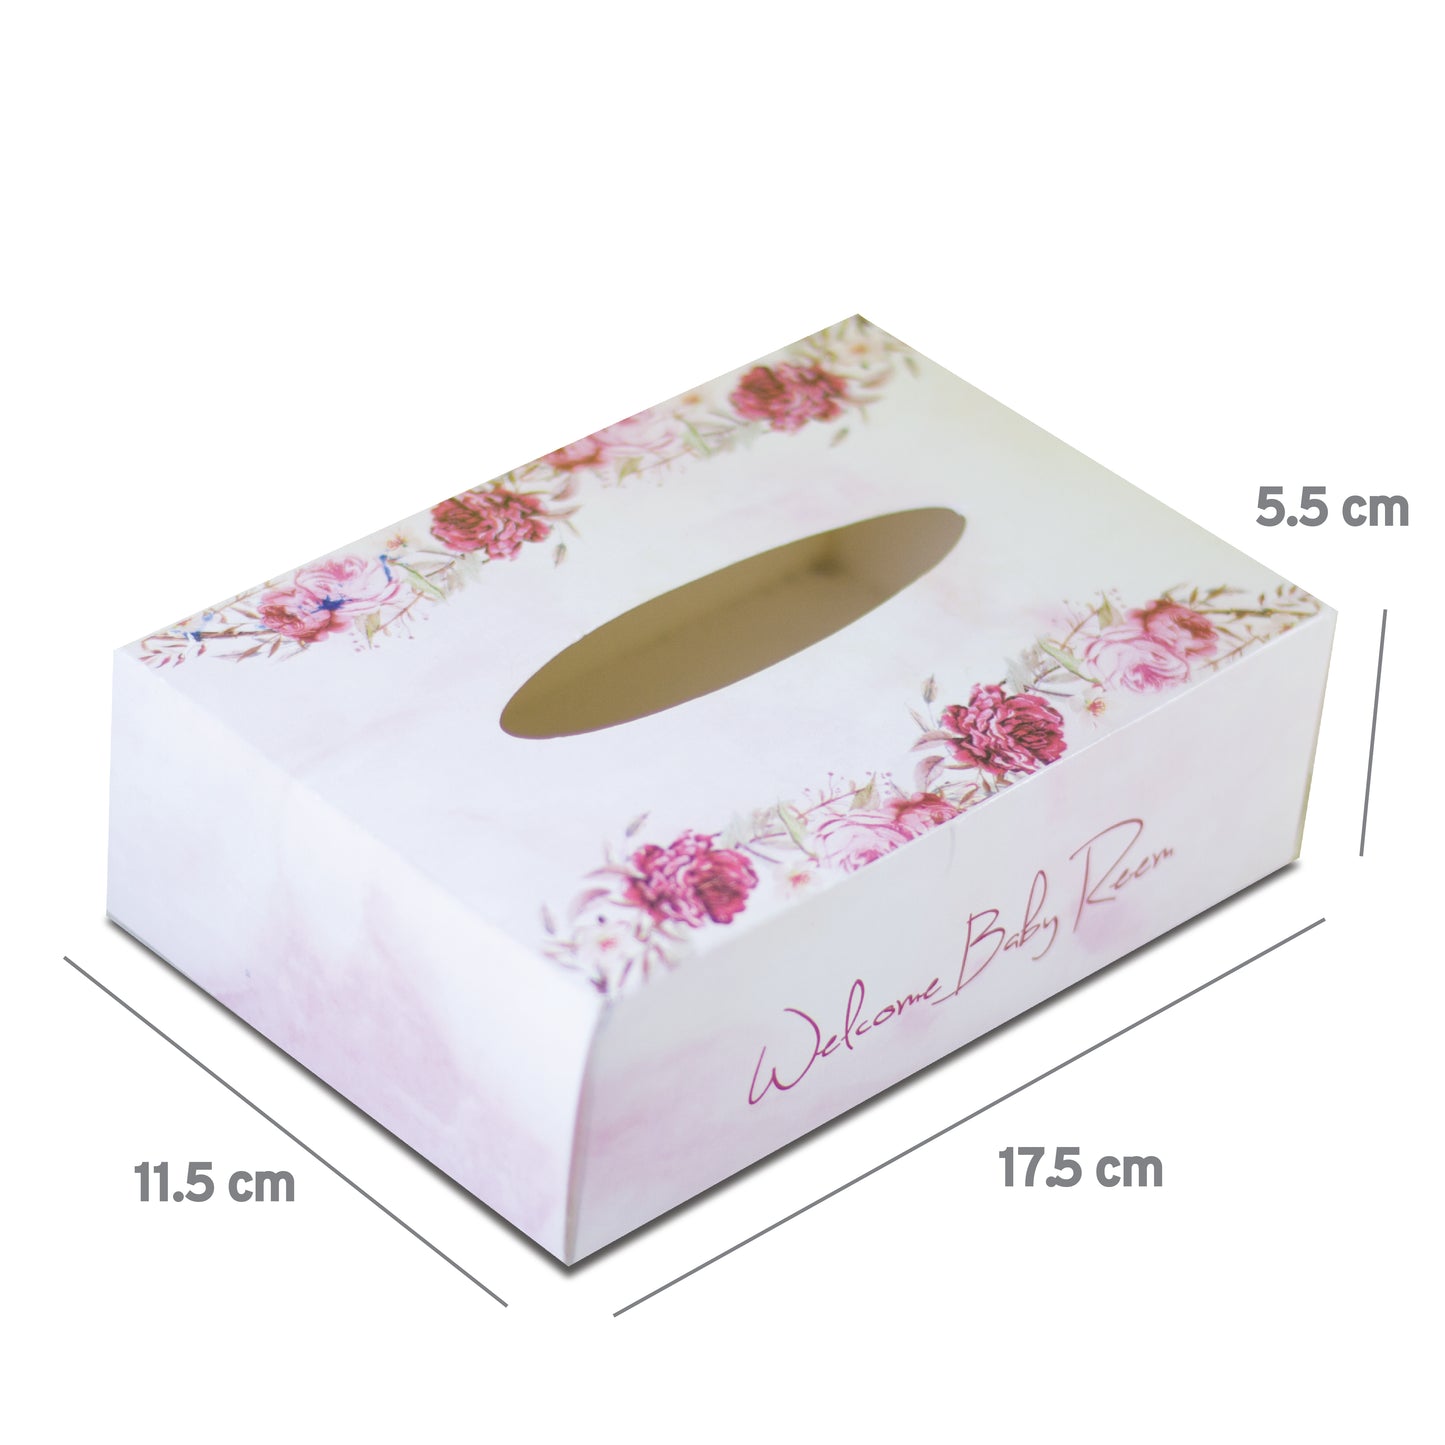 TISSU BOX 17.5x11.5x5.5 cm